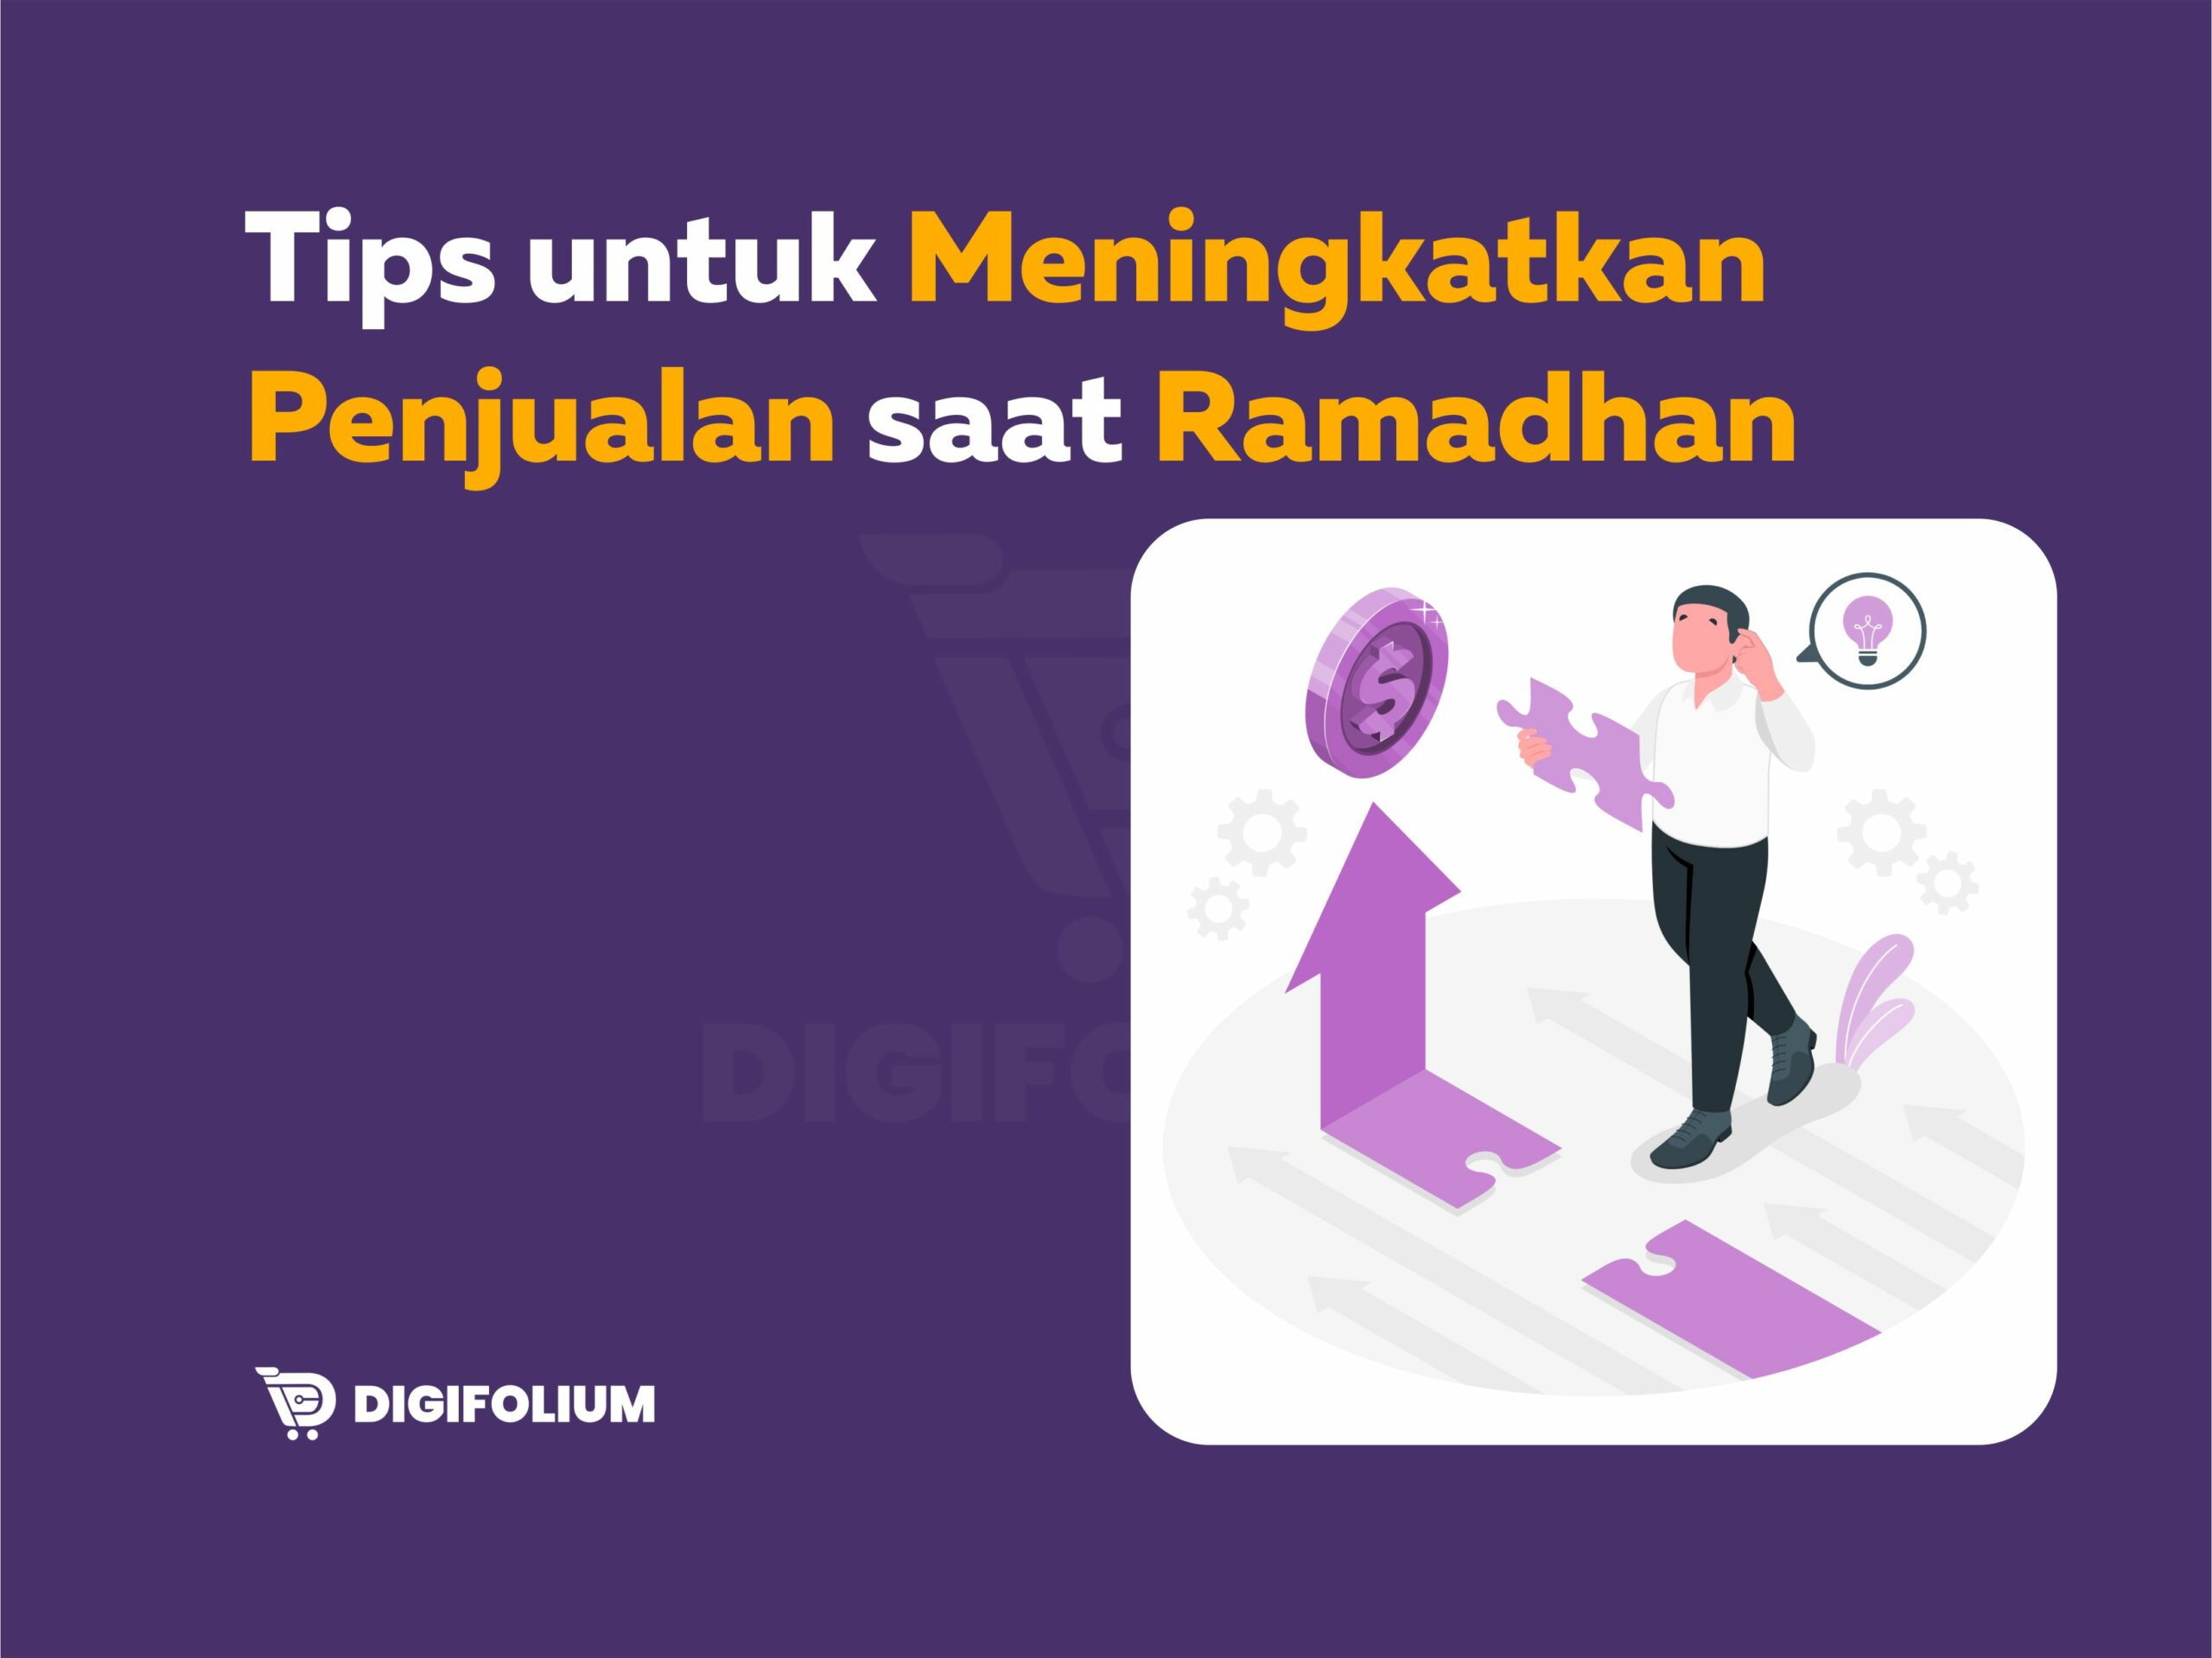 Tips untuk meningkatkan penjualan saat ramadhan